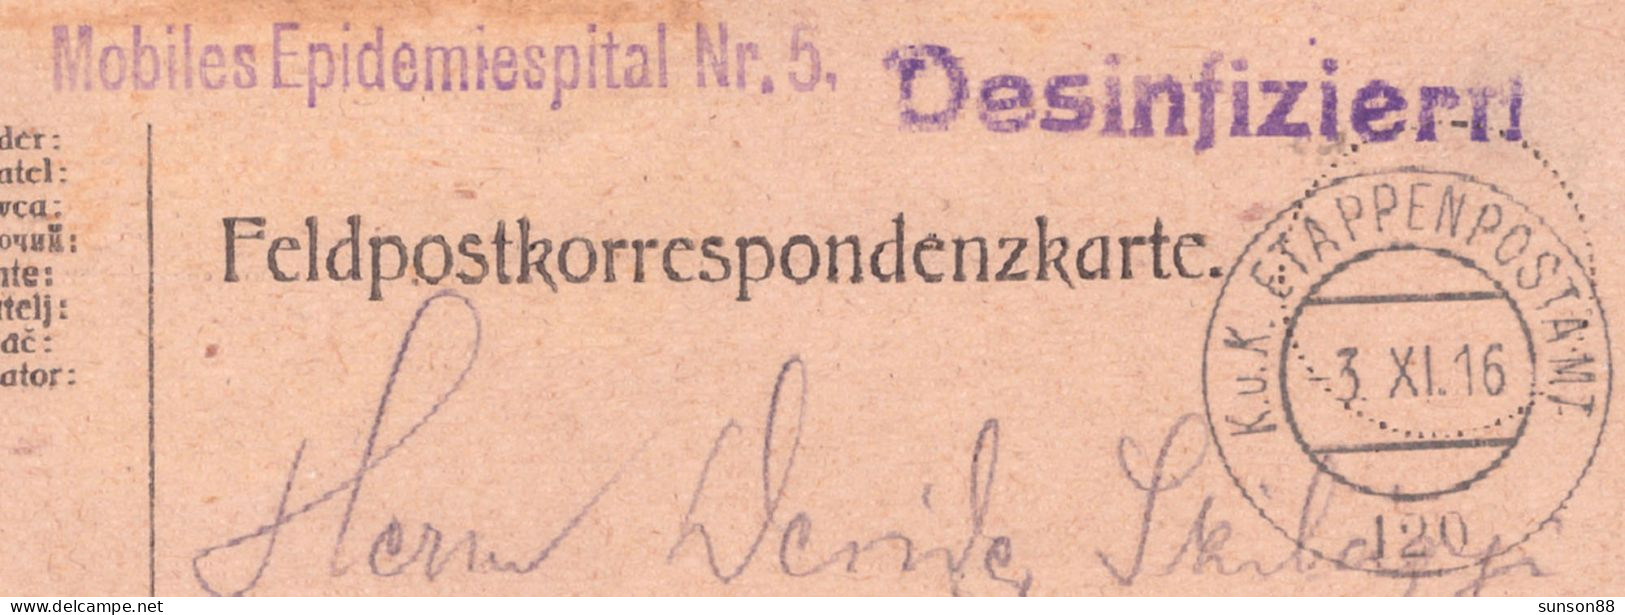 Disinfected WWI Fieldpost Postcard 1916  Blue Linear Cachet : Desinfiziert(41mm)   Mobiles Epidemiespital - Santé